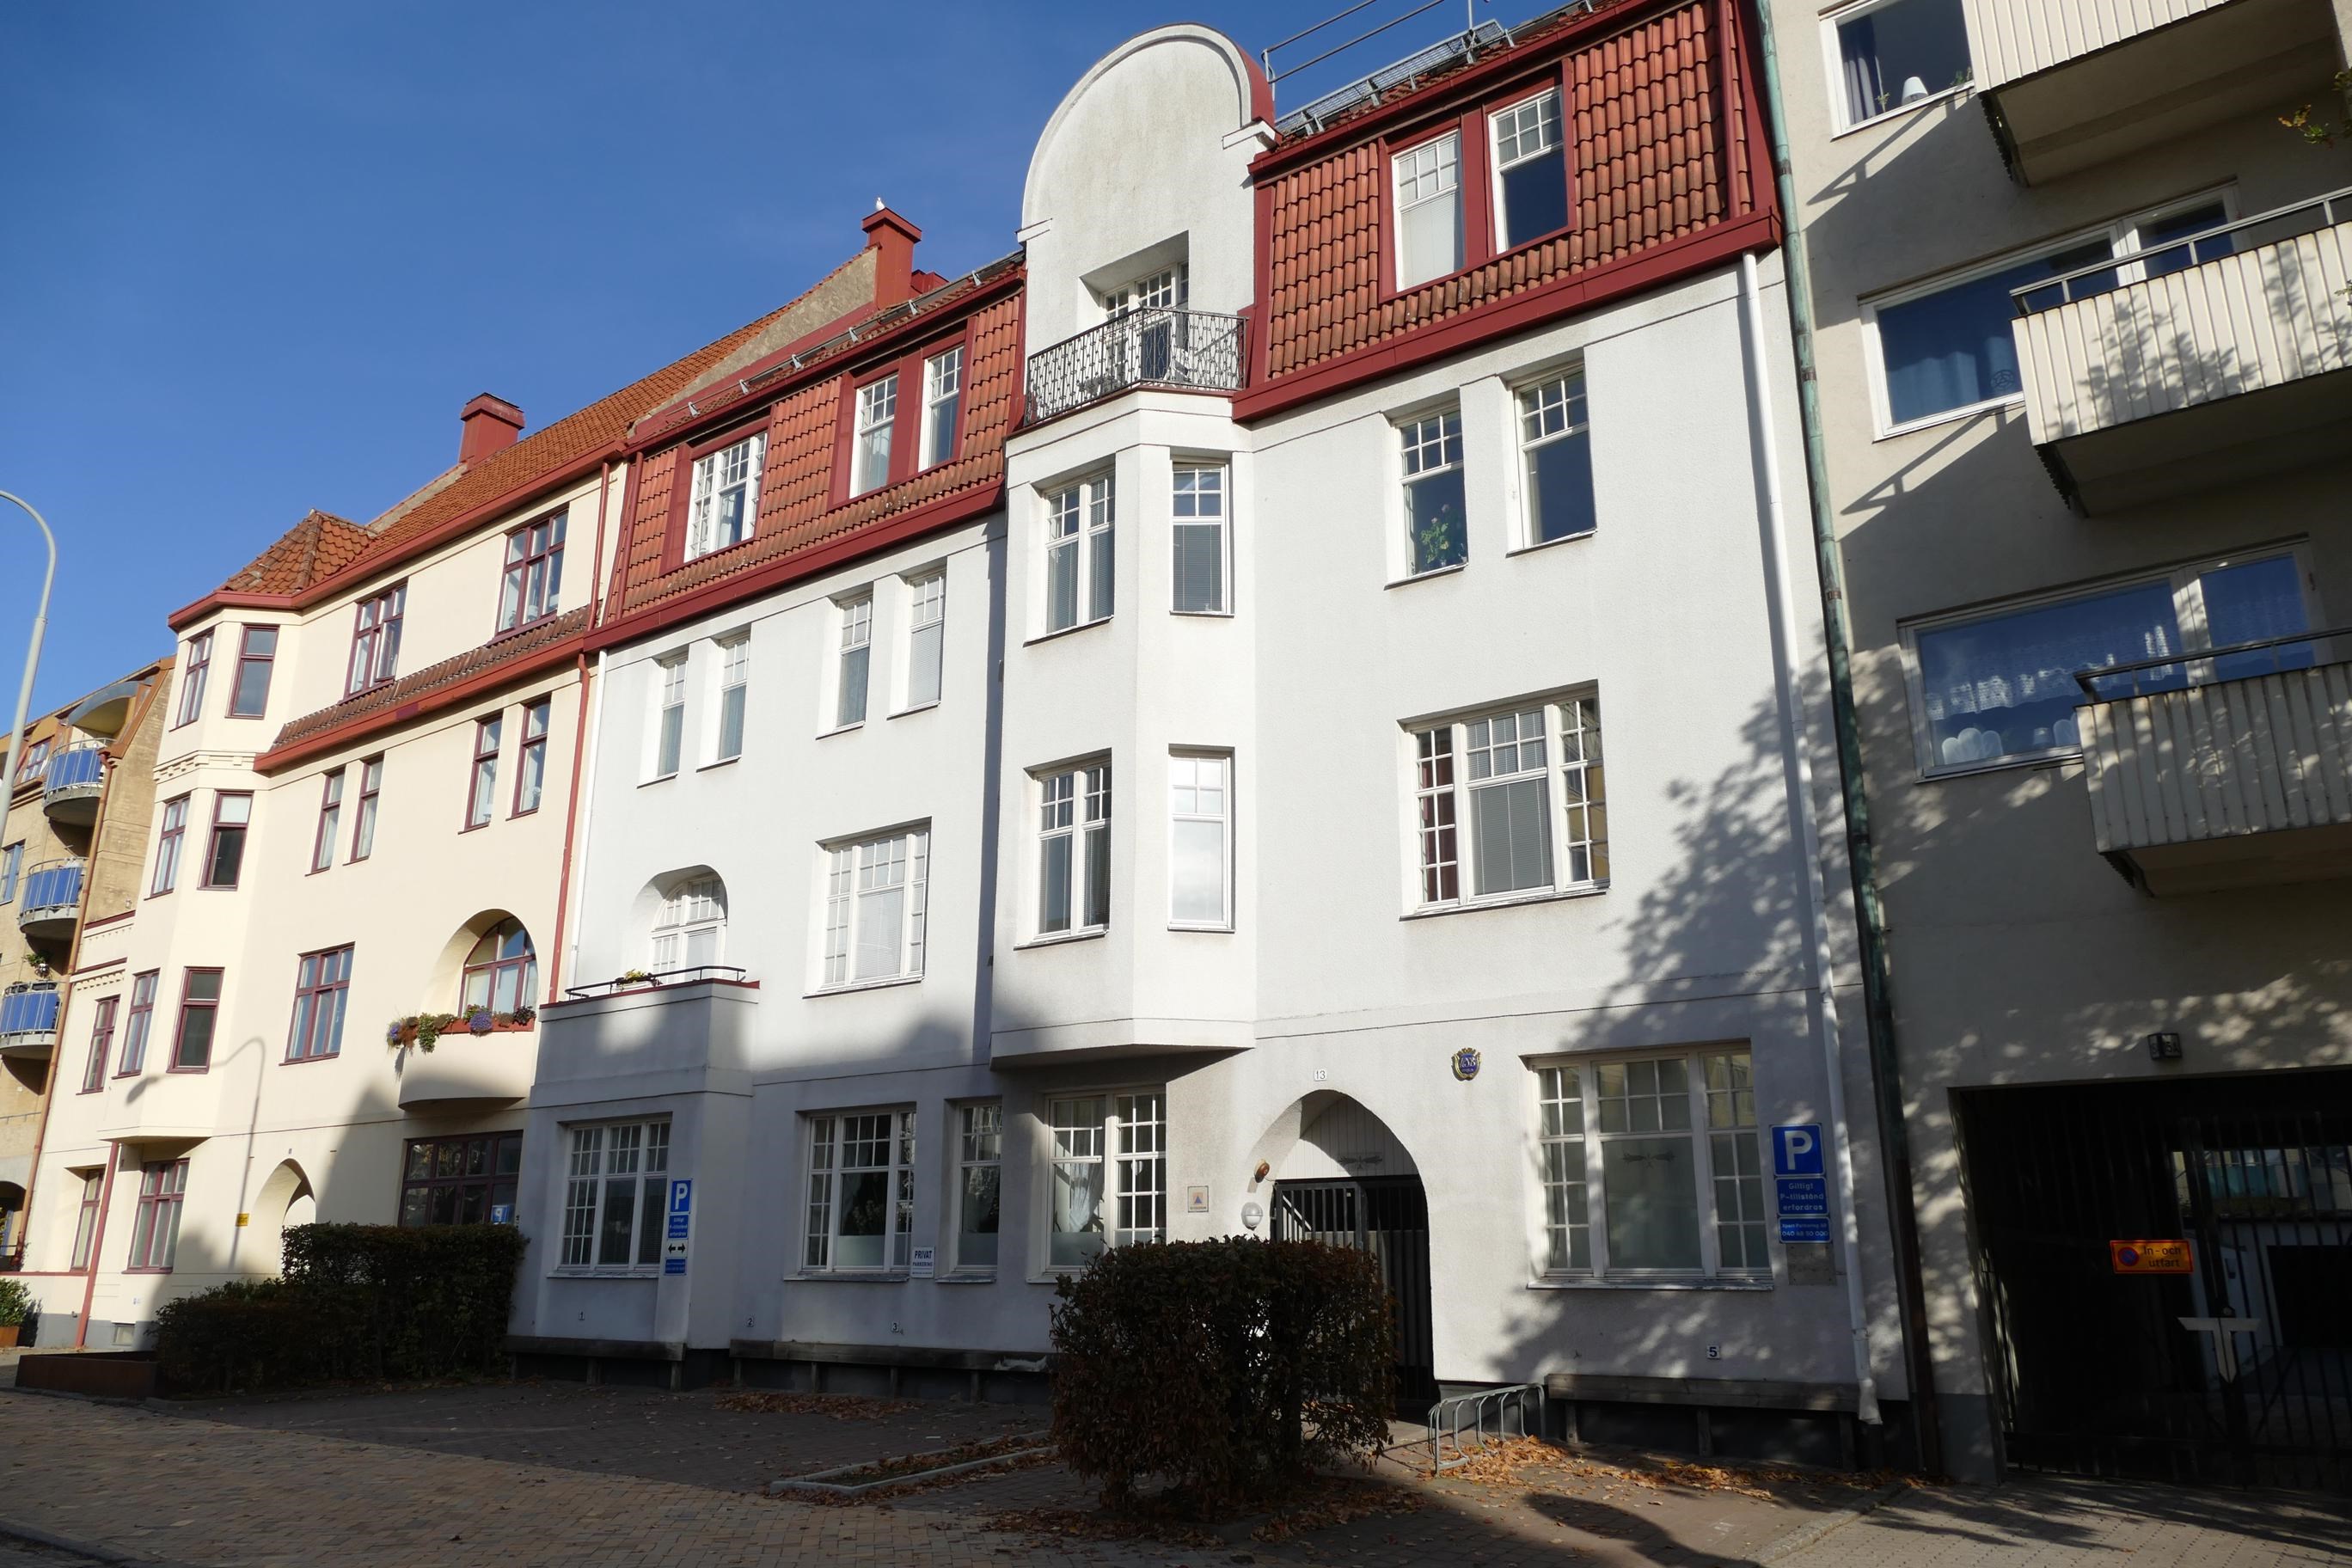 Lägenhet i Landskrona, Sverige, Tranchellsgatan 35 C